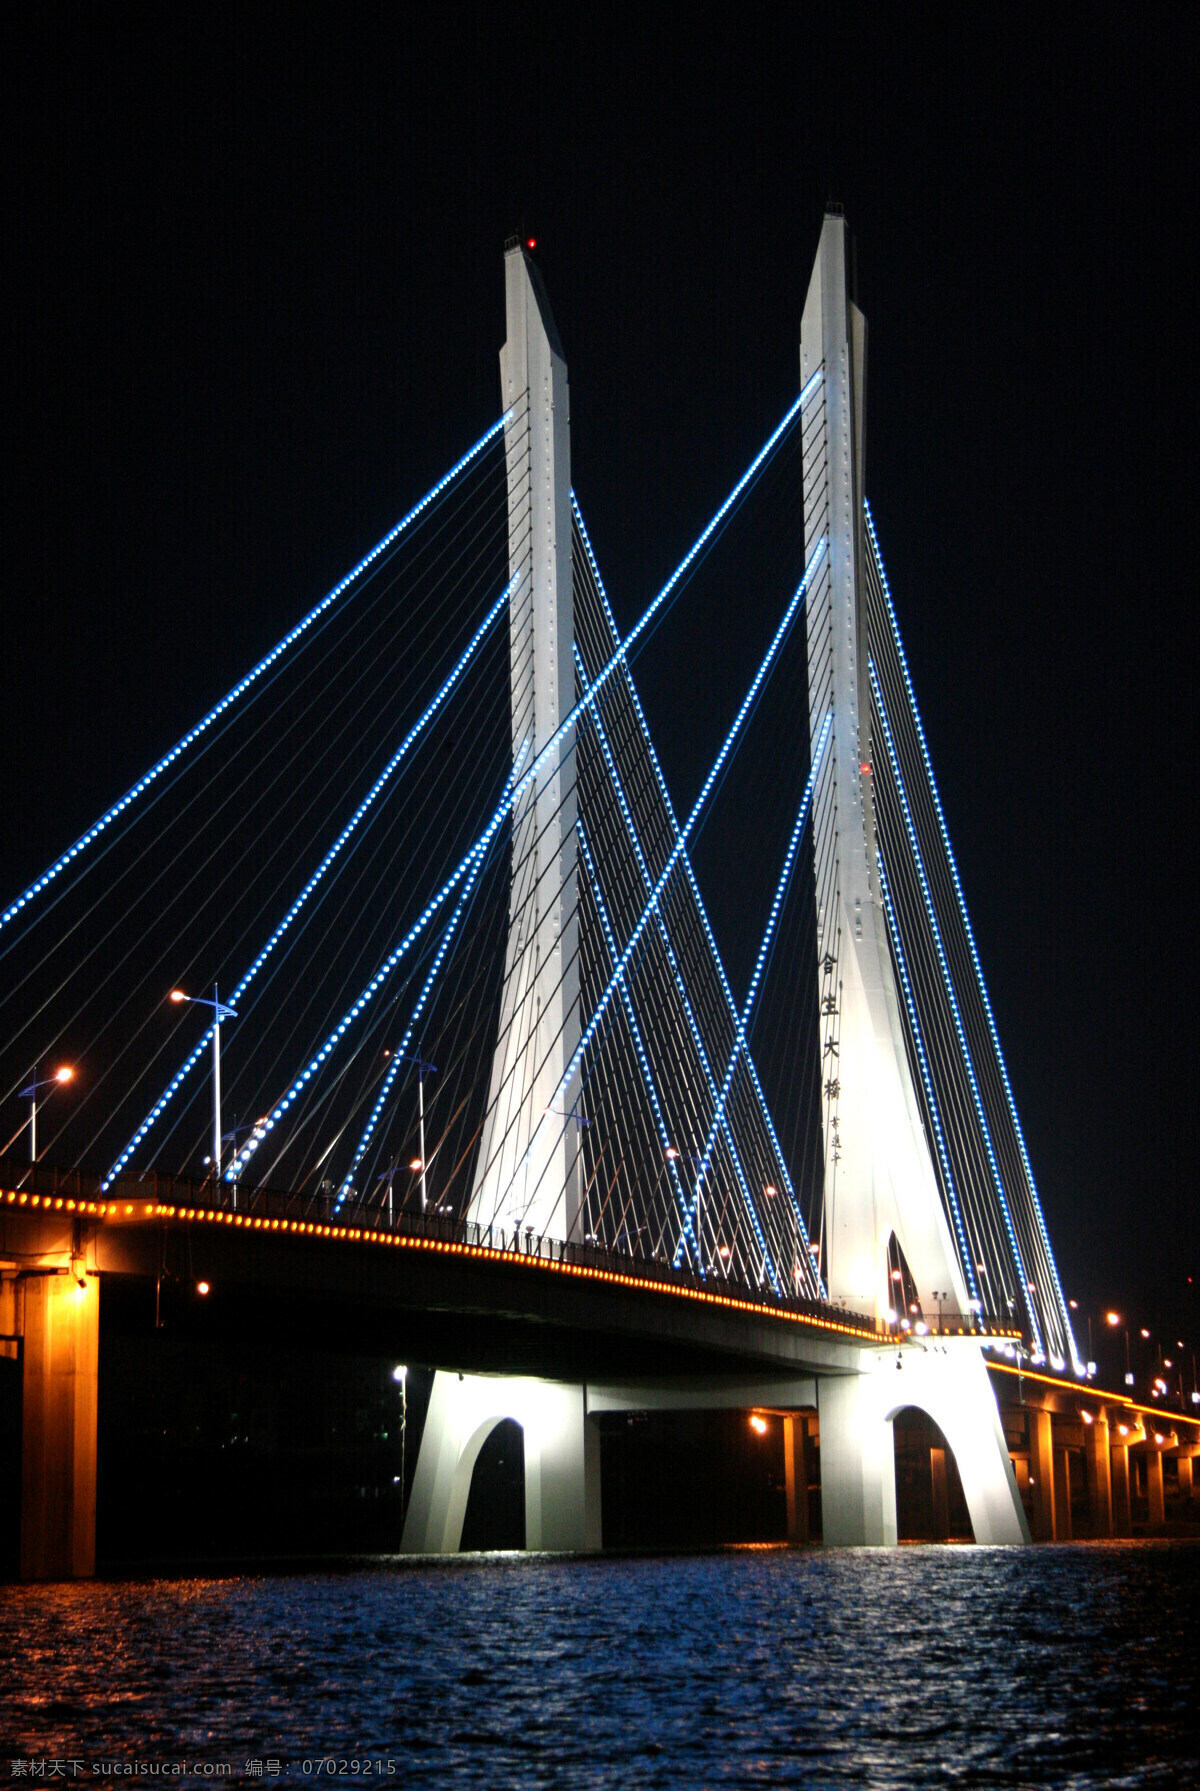 惠州 合生 大桥 夜景 合生大桥 鹅城十景 国内旅游 旅游摄影